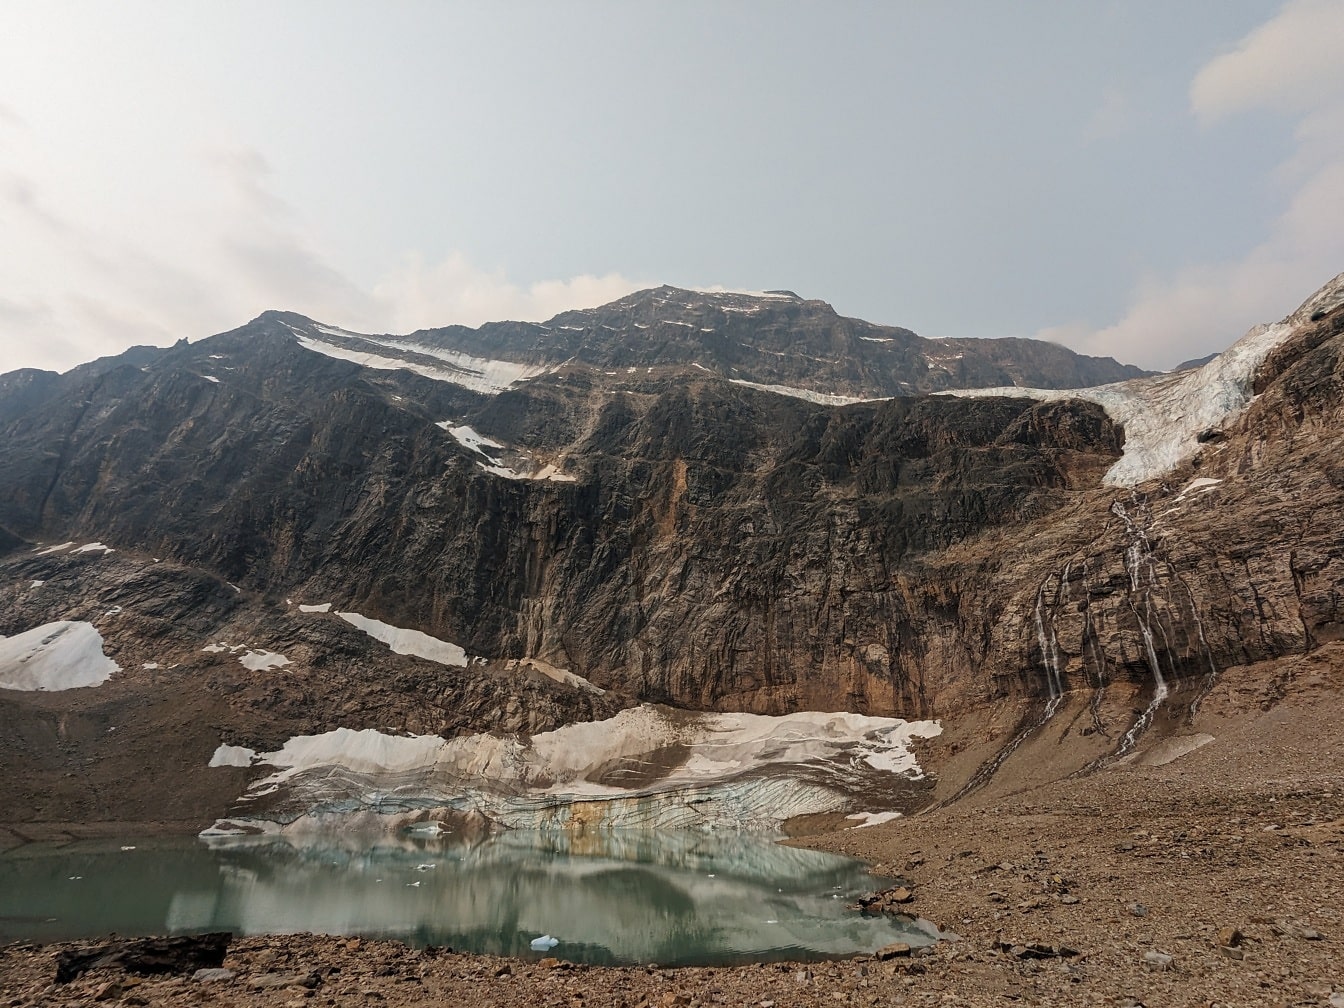 Sông băng tan chảy trên núi hồ Edith Cavell danh lam thắng cảnh công viên quốc gia